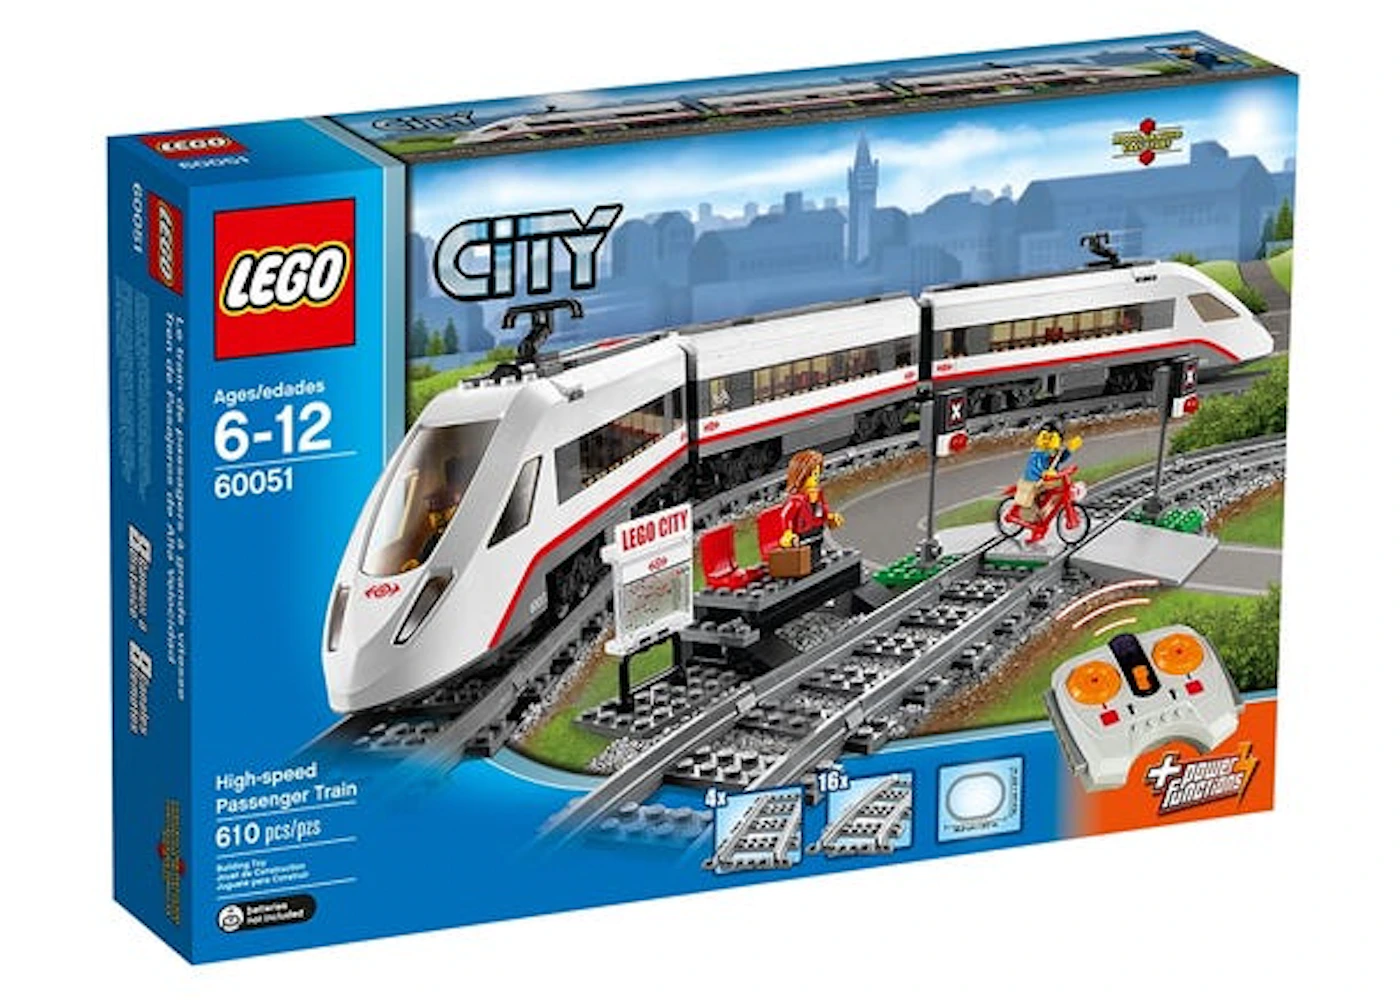 pust udmelding tabe LEGO City High-speed Passenger Train Set 60051 - US